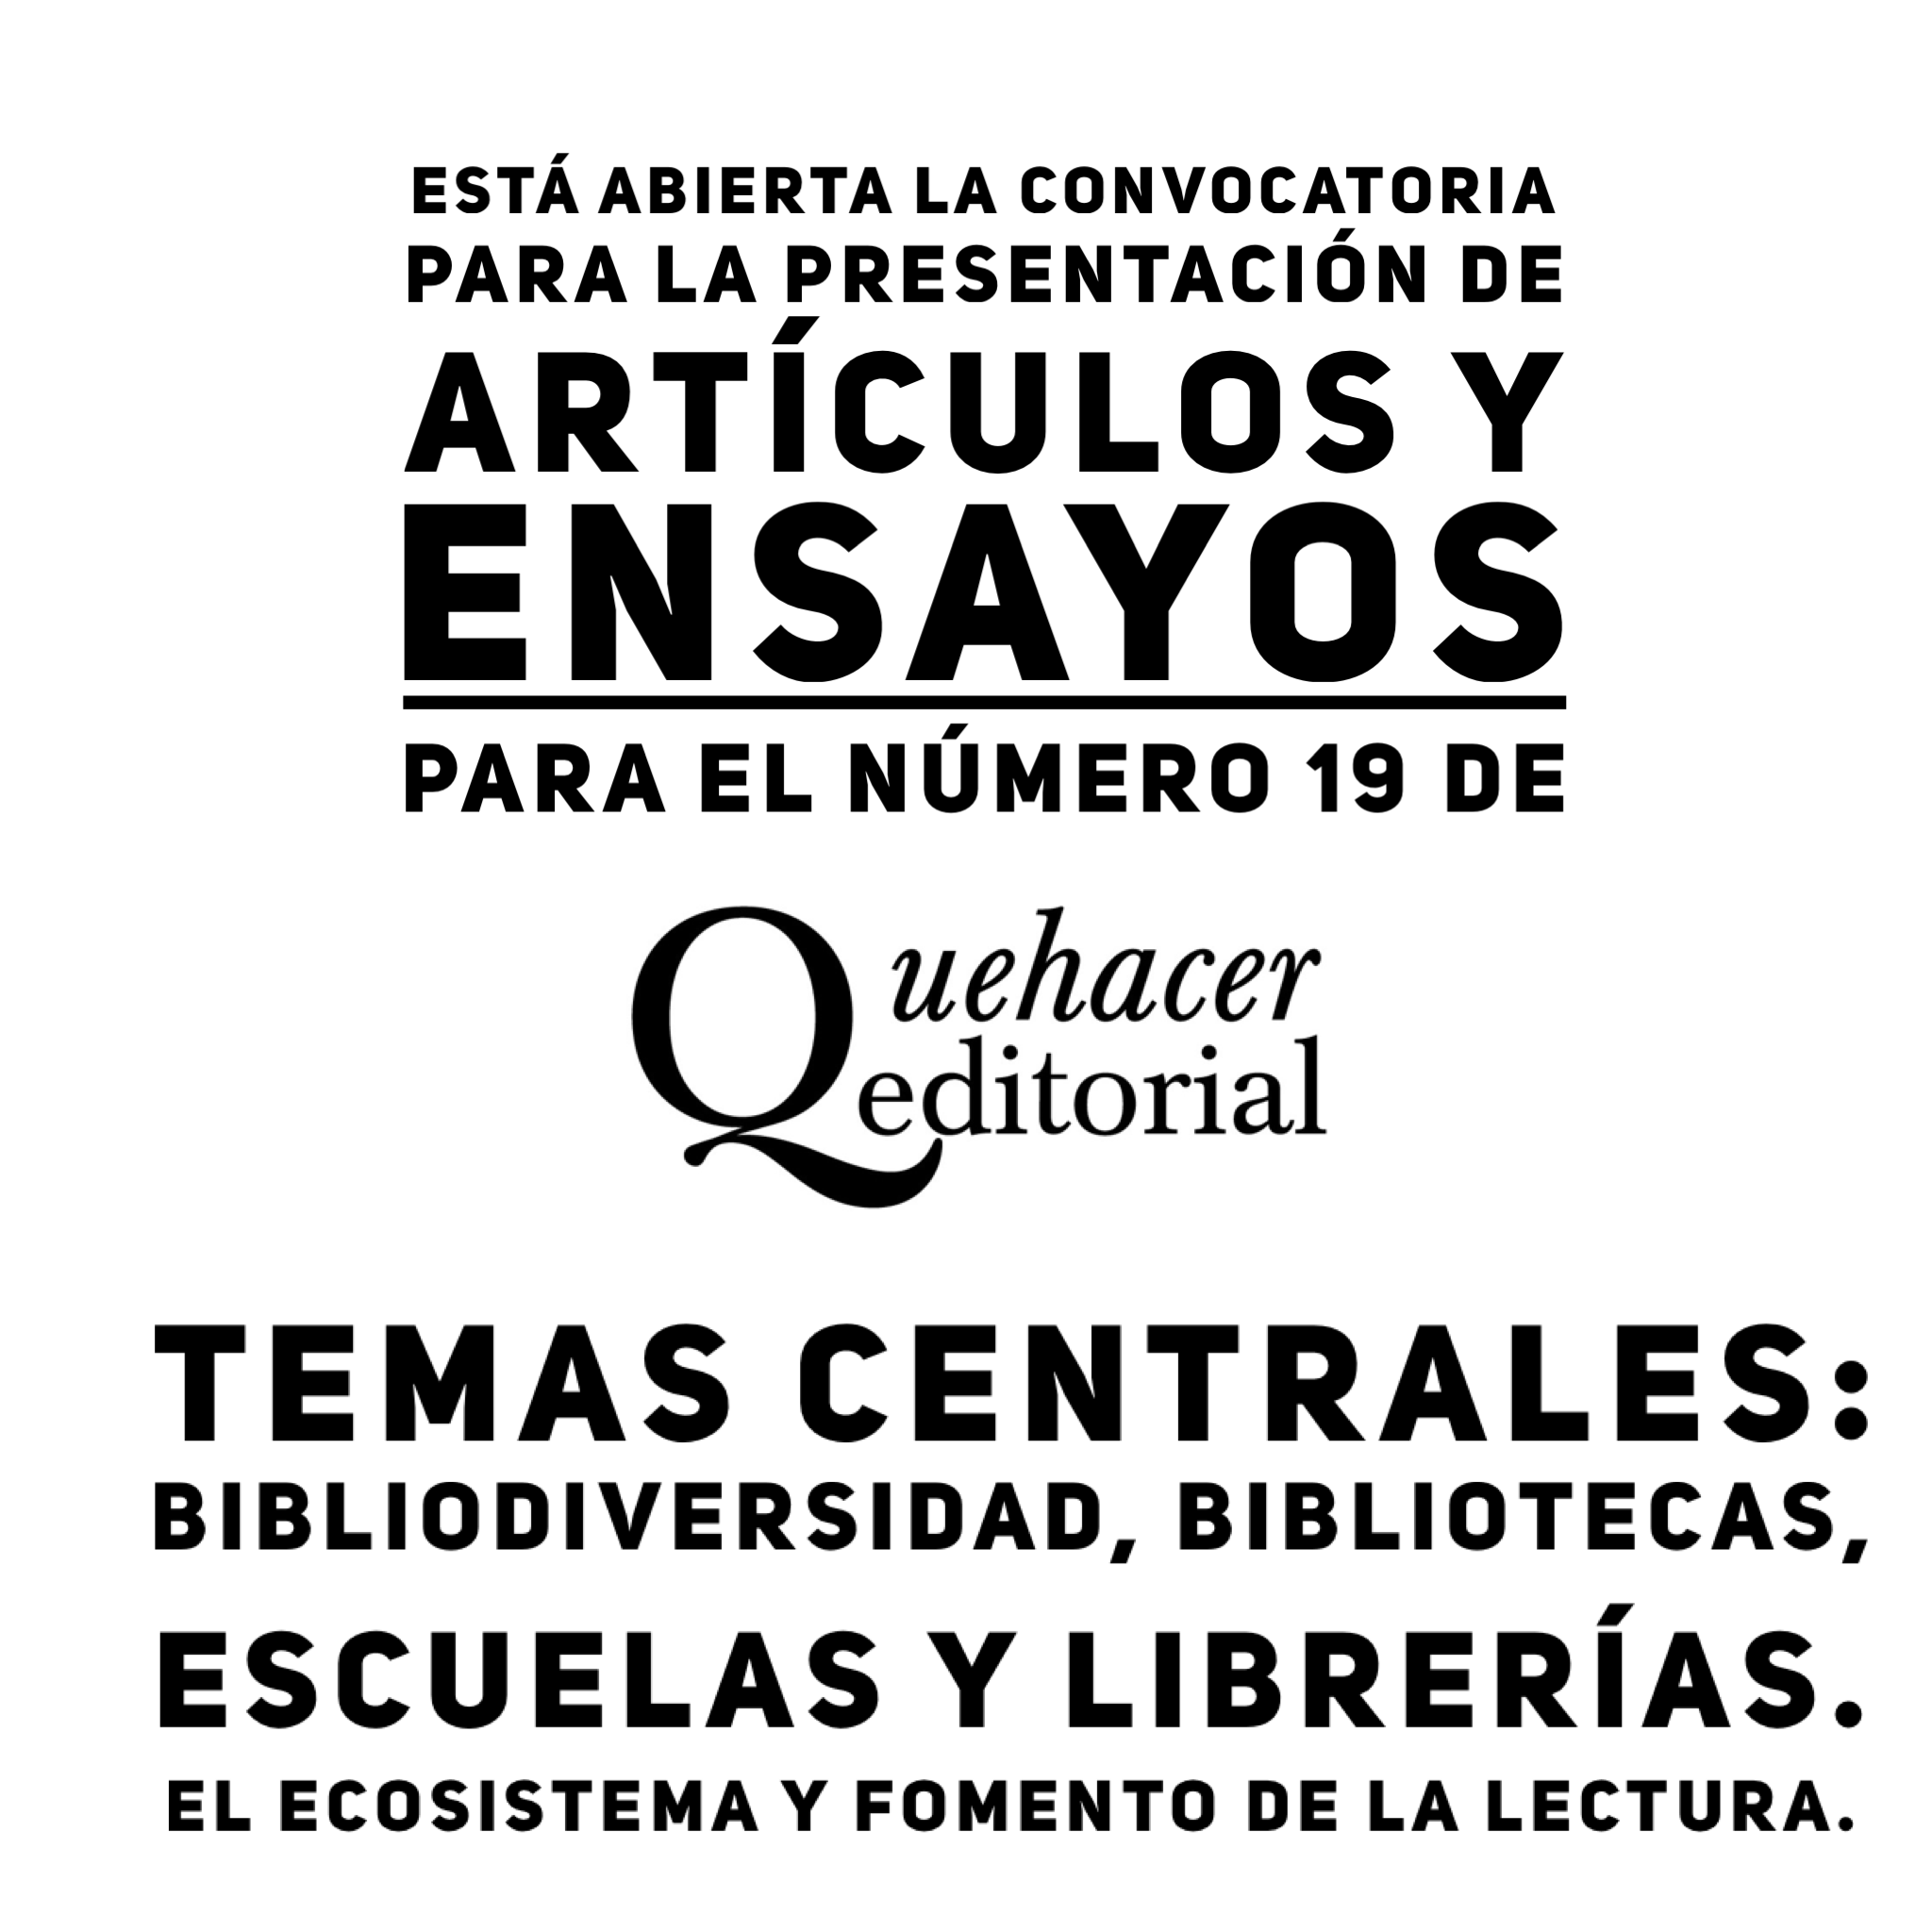 ”Bibliodiversidad, bibliotecas, escuelas y librerías: El ecosistema y fomento de la lectura”, tema de Quehacer Editorial 19